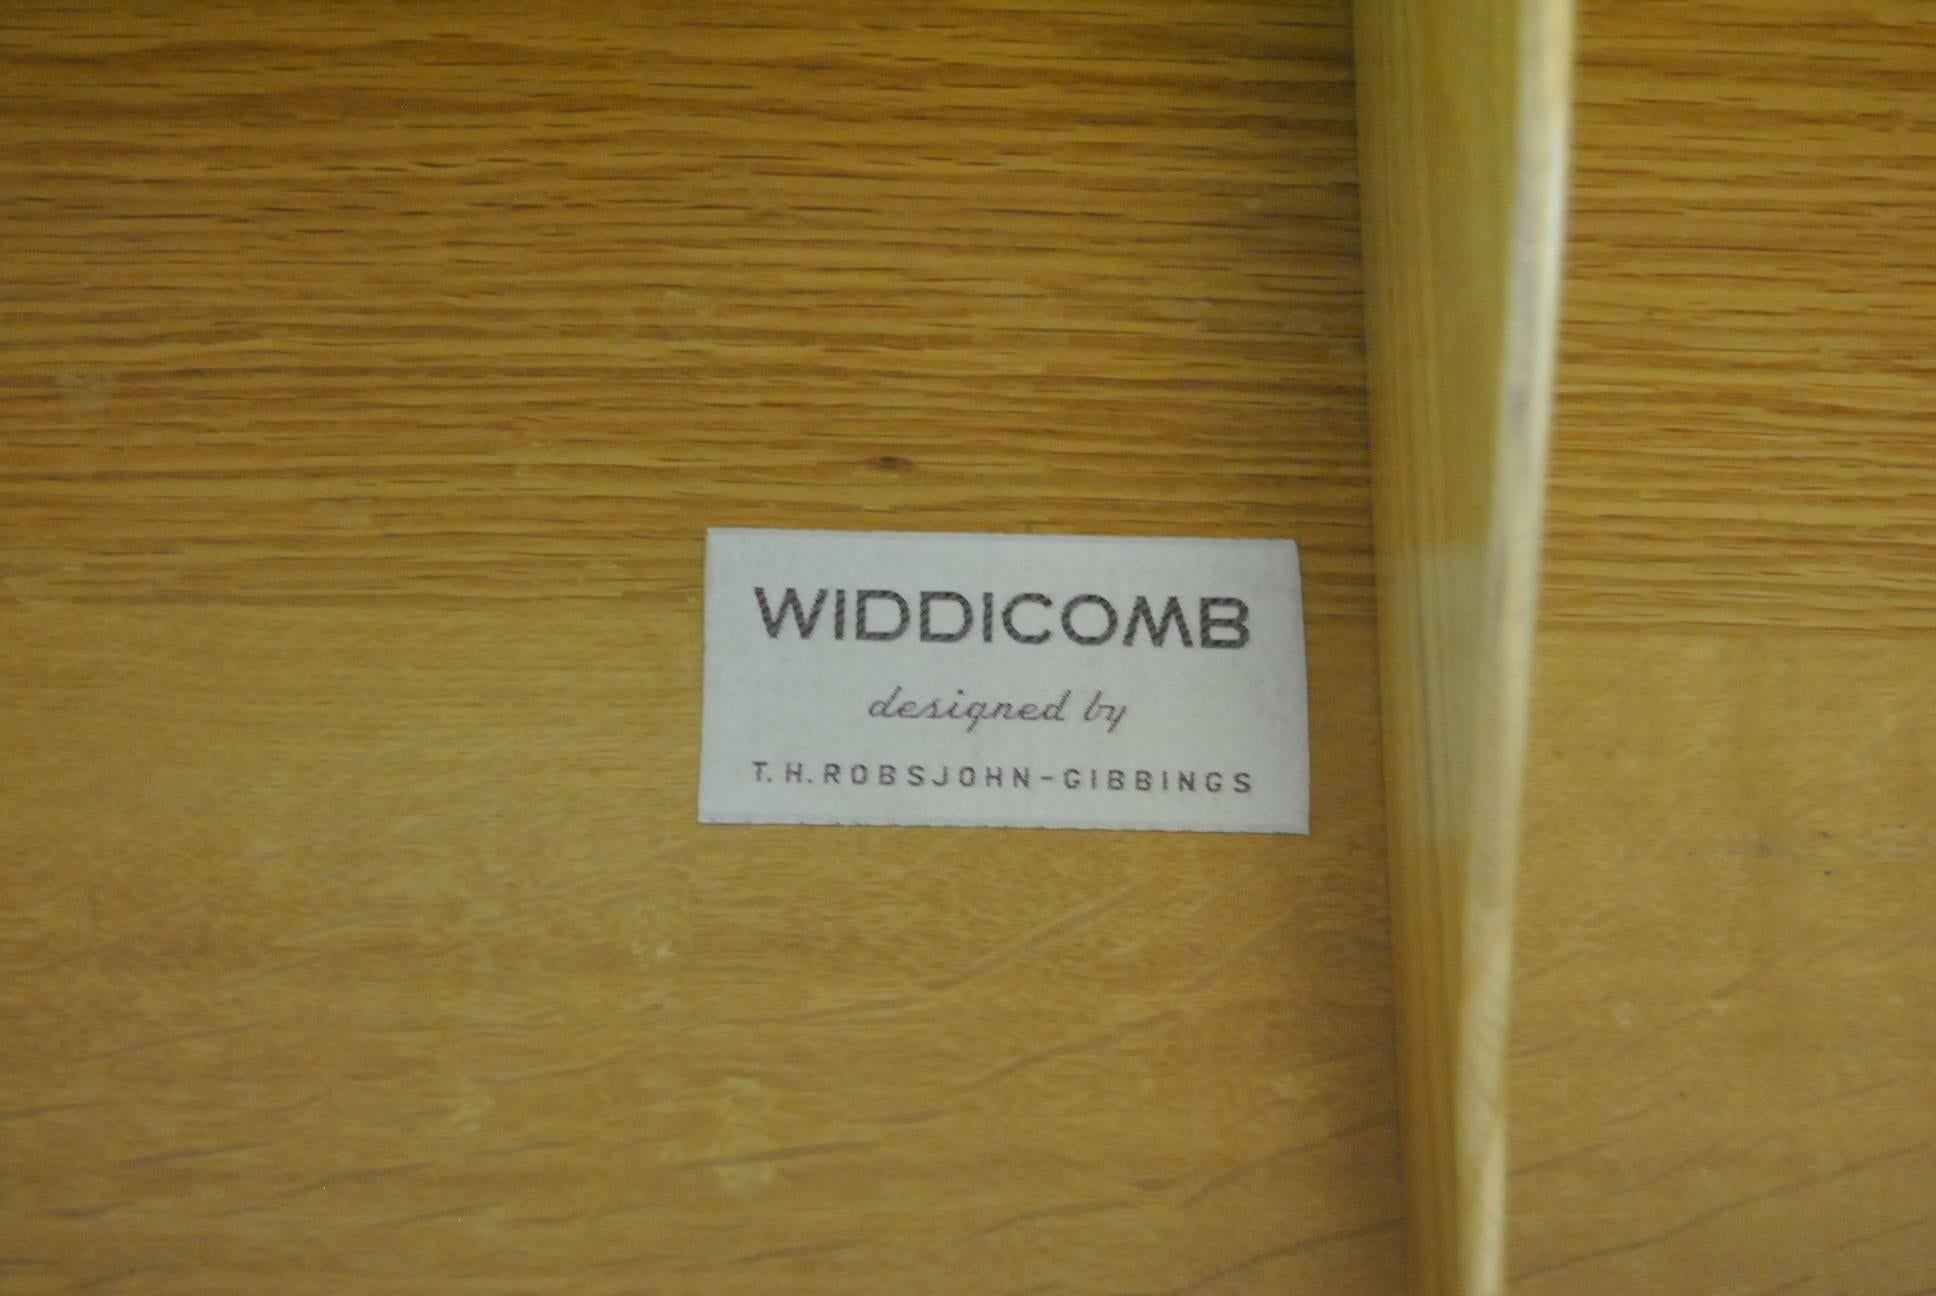 Midcentury Four-Drawer Walnut Chest by T.H. Robsjohn-Gibbings for Widdicomb 2